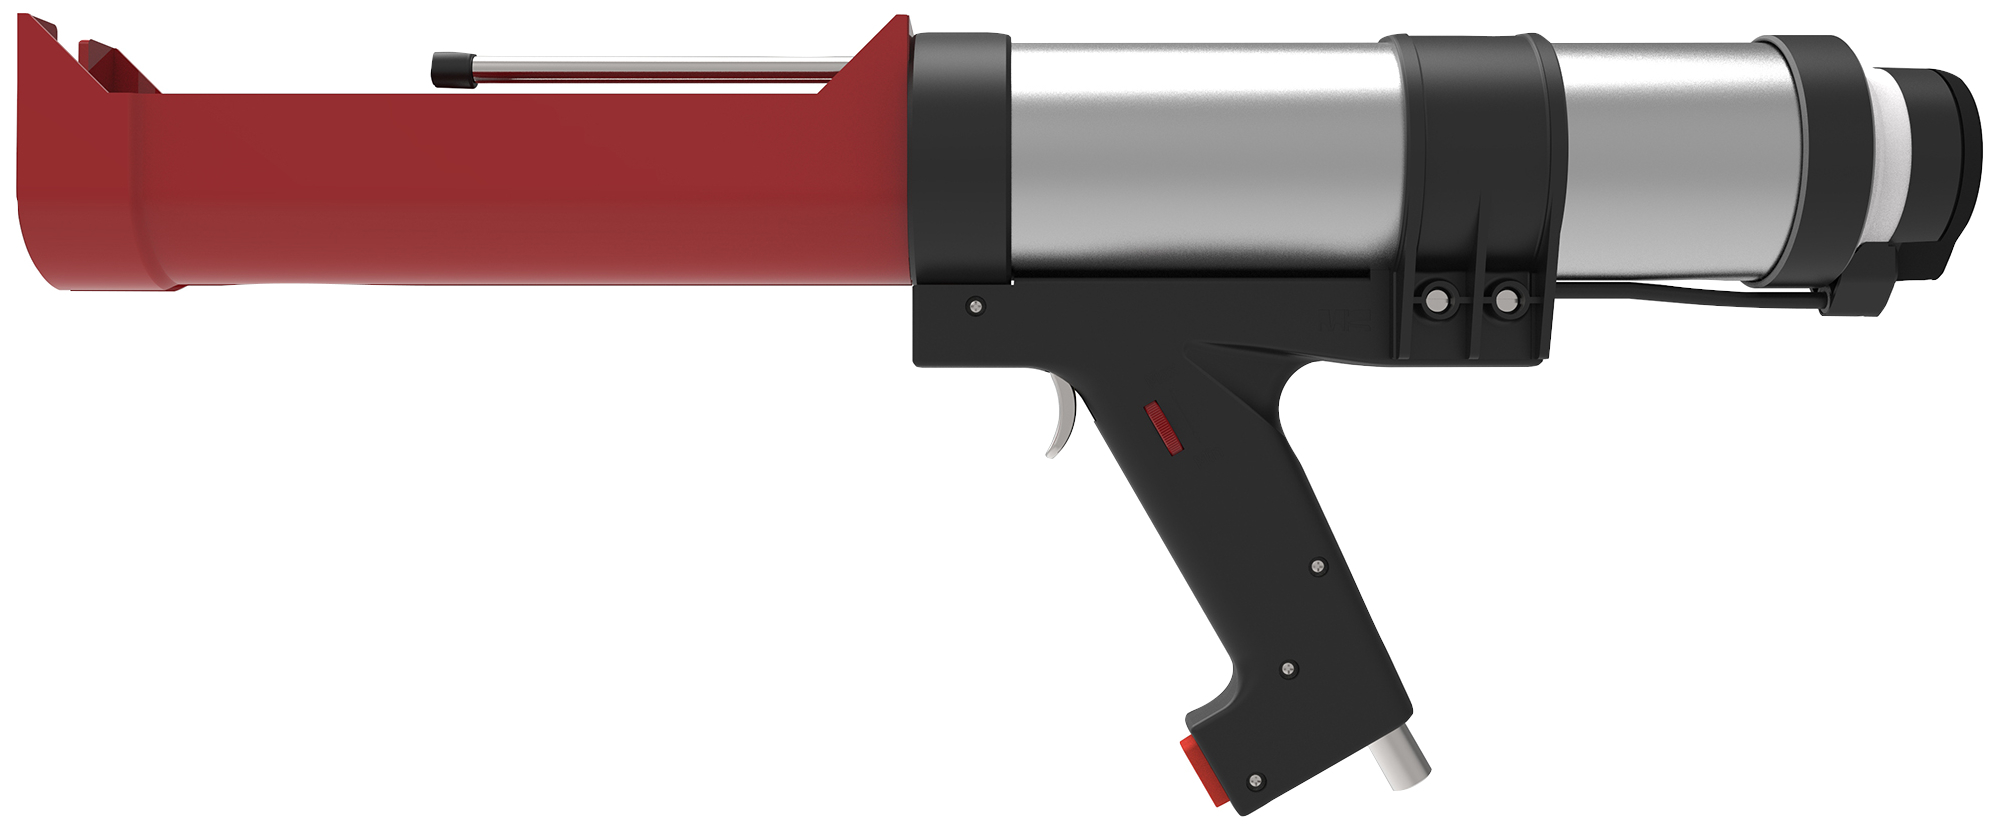 fischer Pistola pneumatica FIS AP per ancorante chimico (1 Pz.) Pistola pneumatica.